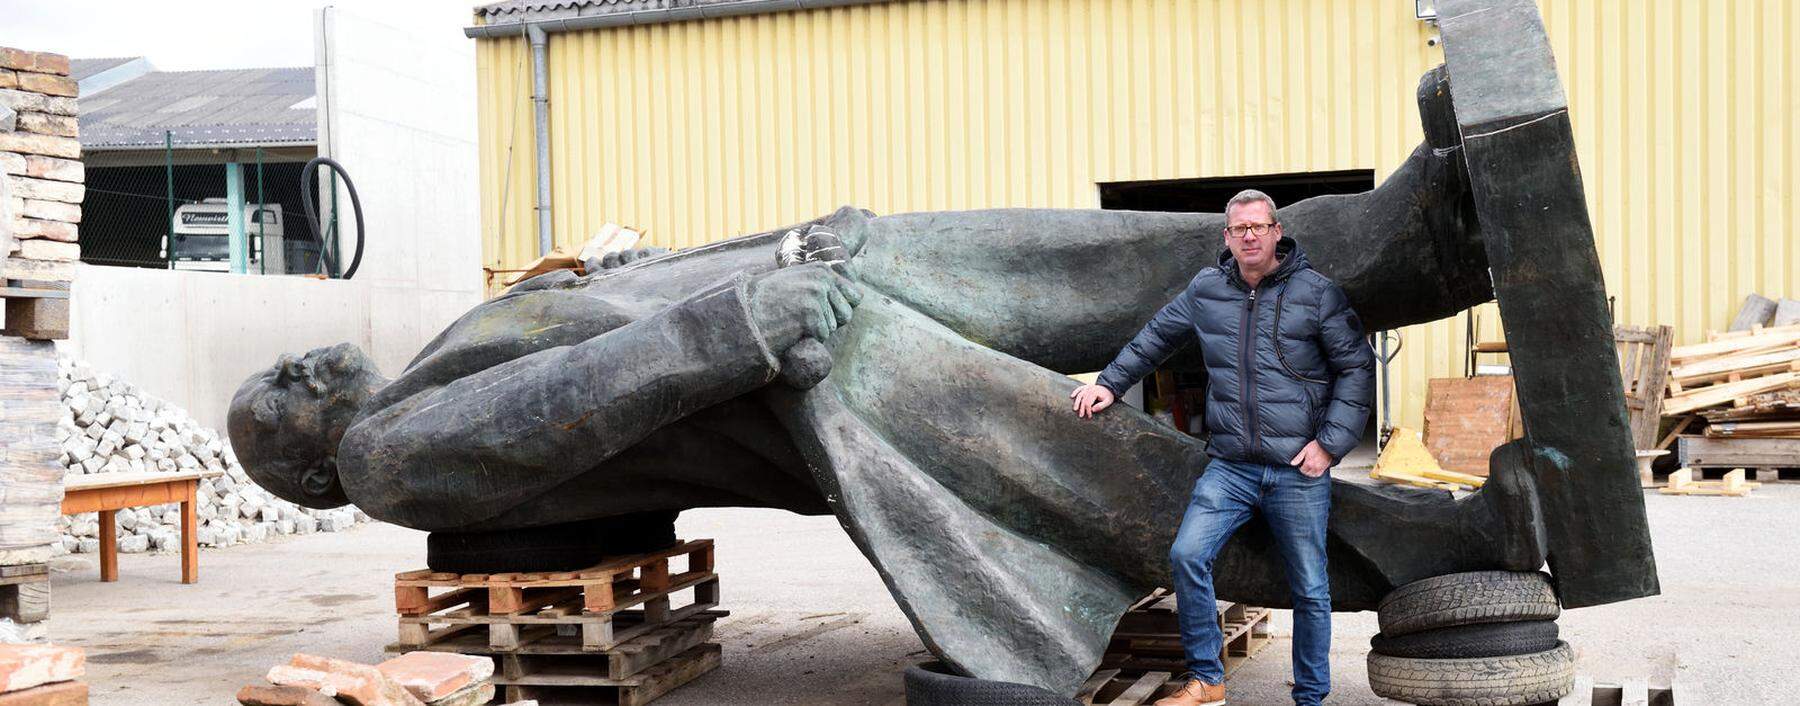 Christian Berger verkauft alte Baustoffe – und gelegentlich auch Sowjet-Relikte. So wie etwa jetzt eine 4,8 Meter hohe Lenin-Statue aus der Ukraine.